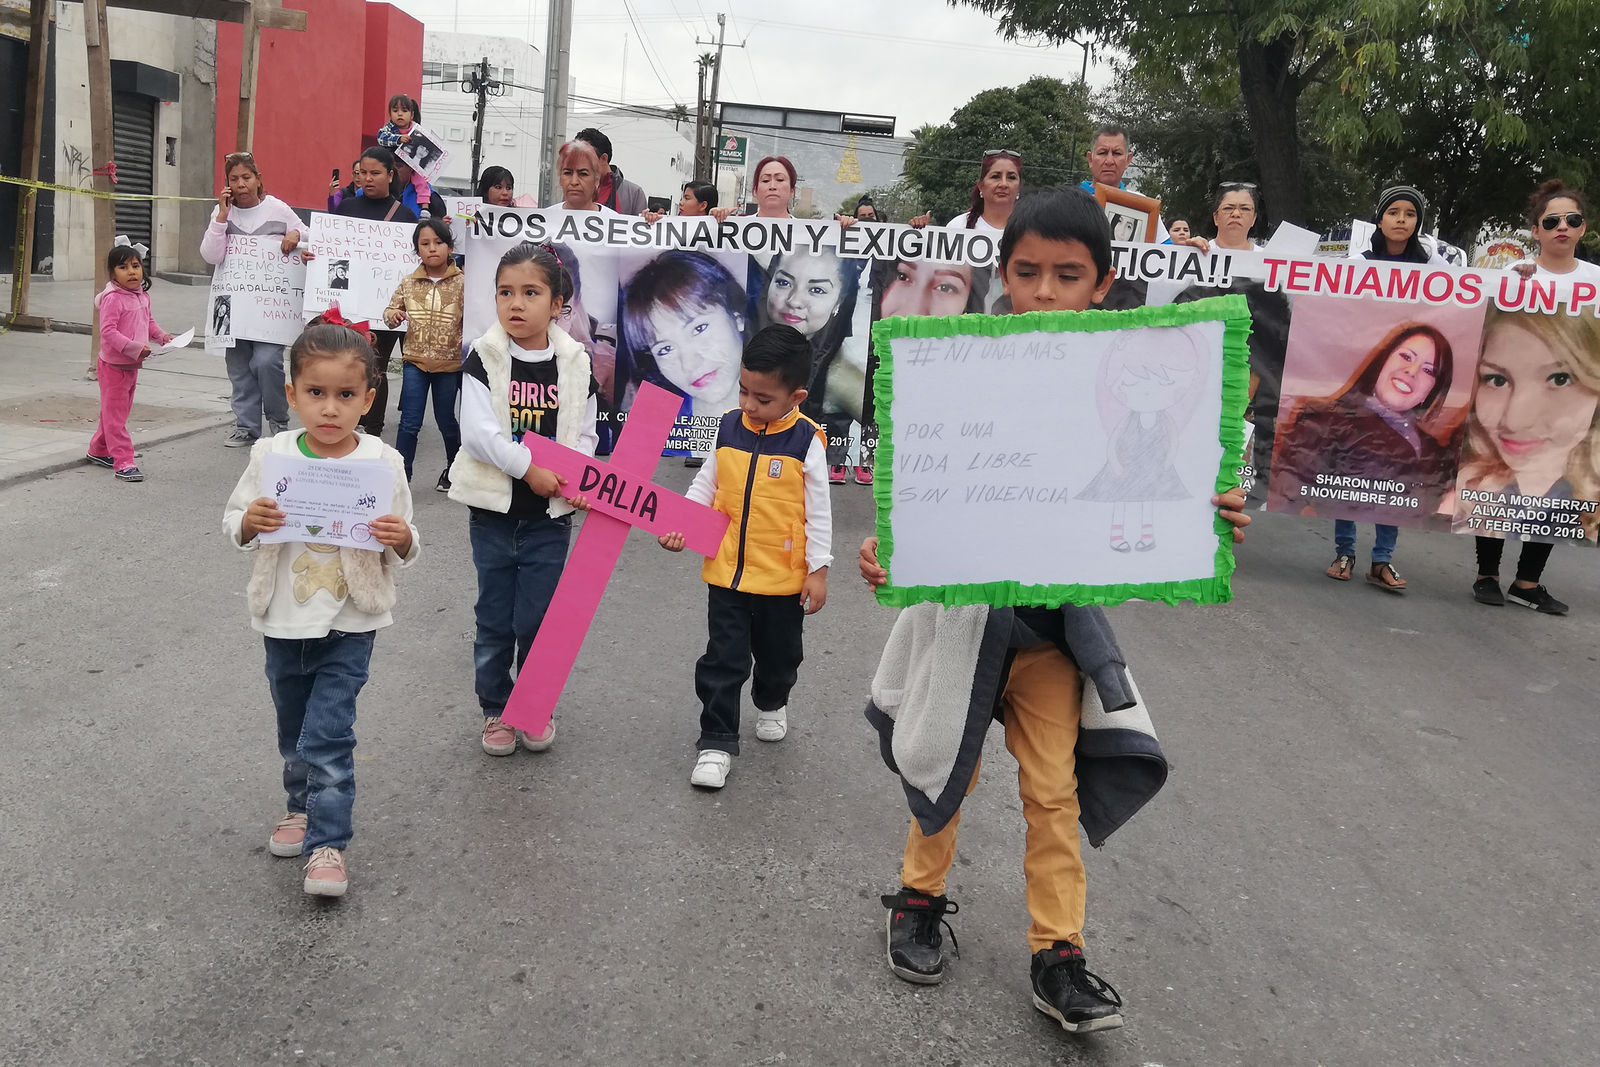 Conmemoración. Colectivos feministas marcharon ayer sobre la calzada Colón, para exigir un alto a la violencia institucional por parte de dependencias del Estado. (IVÁN CORPUS)